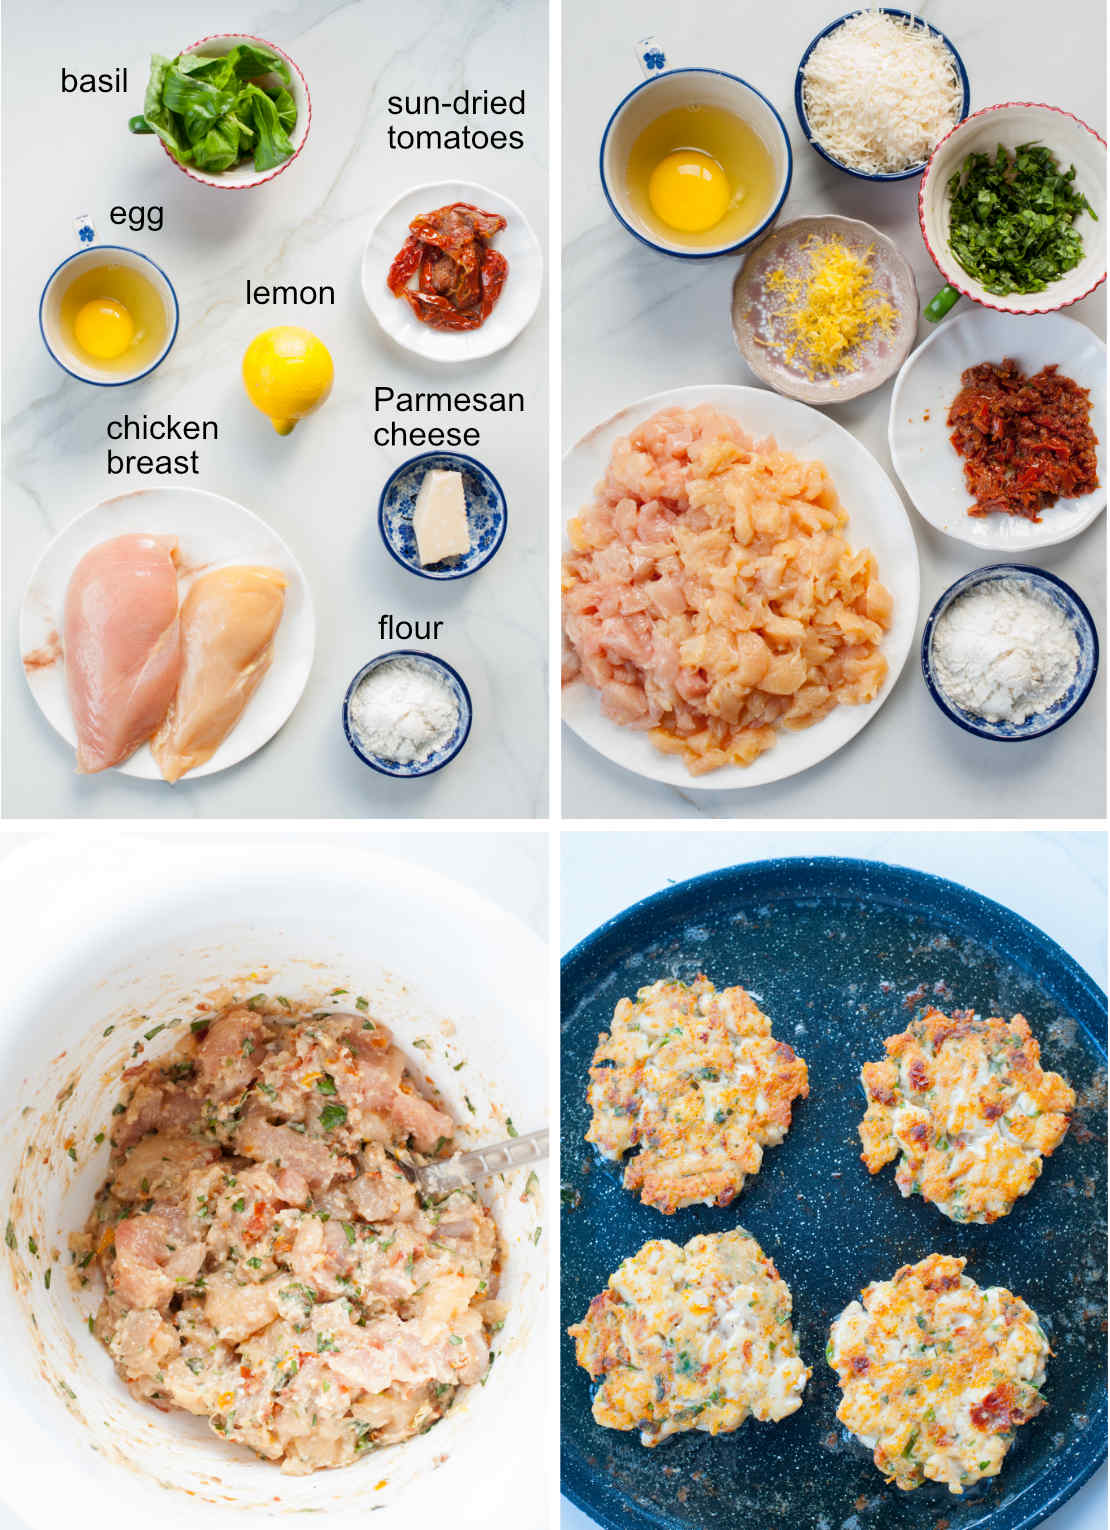 składniki i etapy przygotowania kotletów siekanych z kurczaka przyprawionych w stylu włoskim